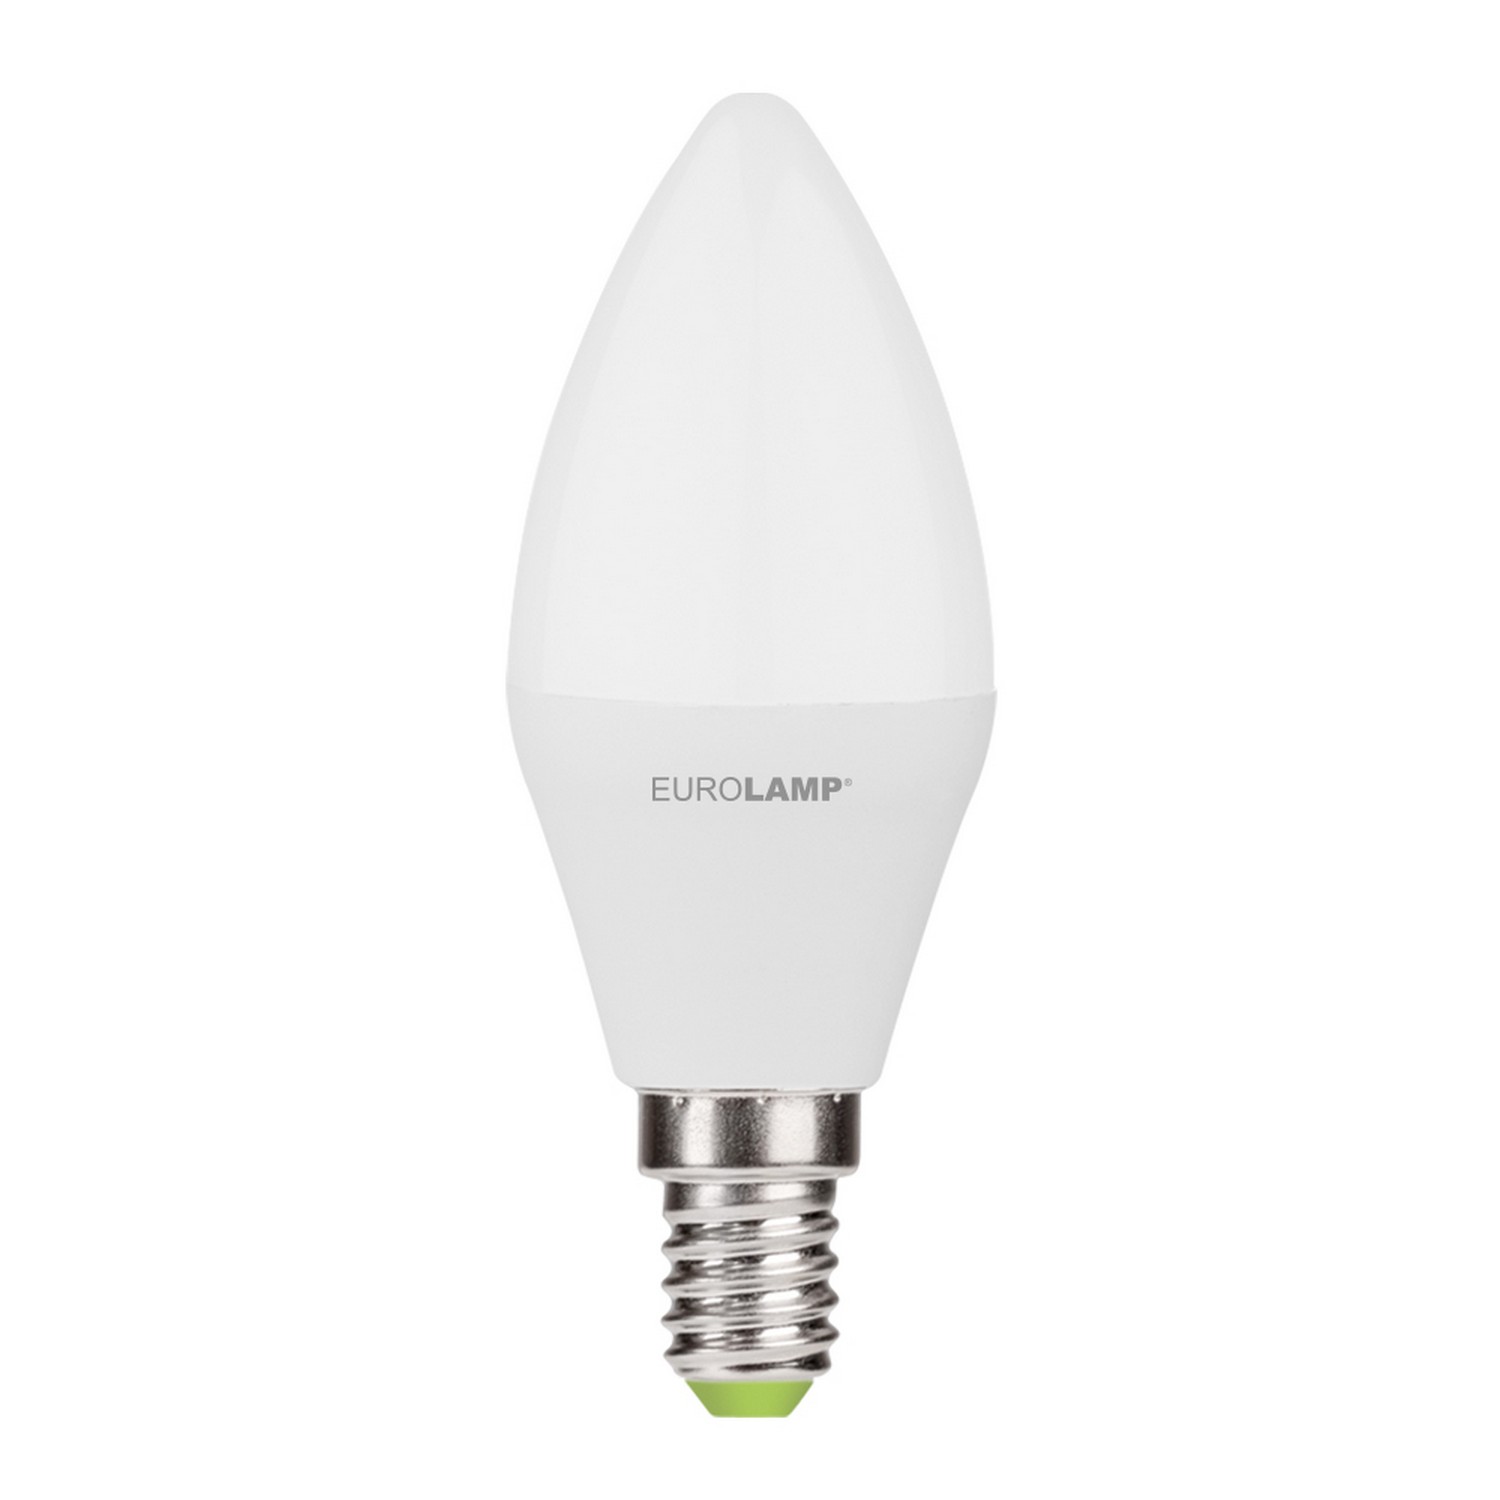 Лампа Eurolamp LED EKO Свеча 7W E14 4000K акция "1+1" цена 0.00 грн - фотография 2